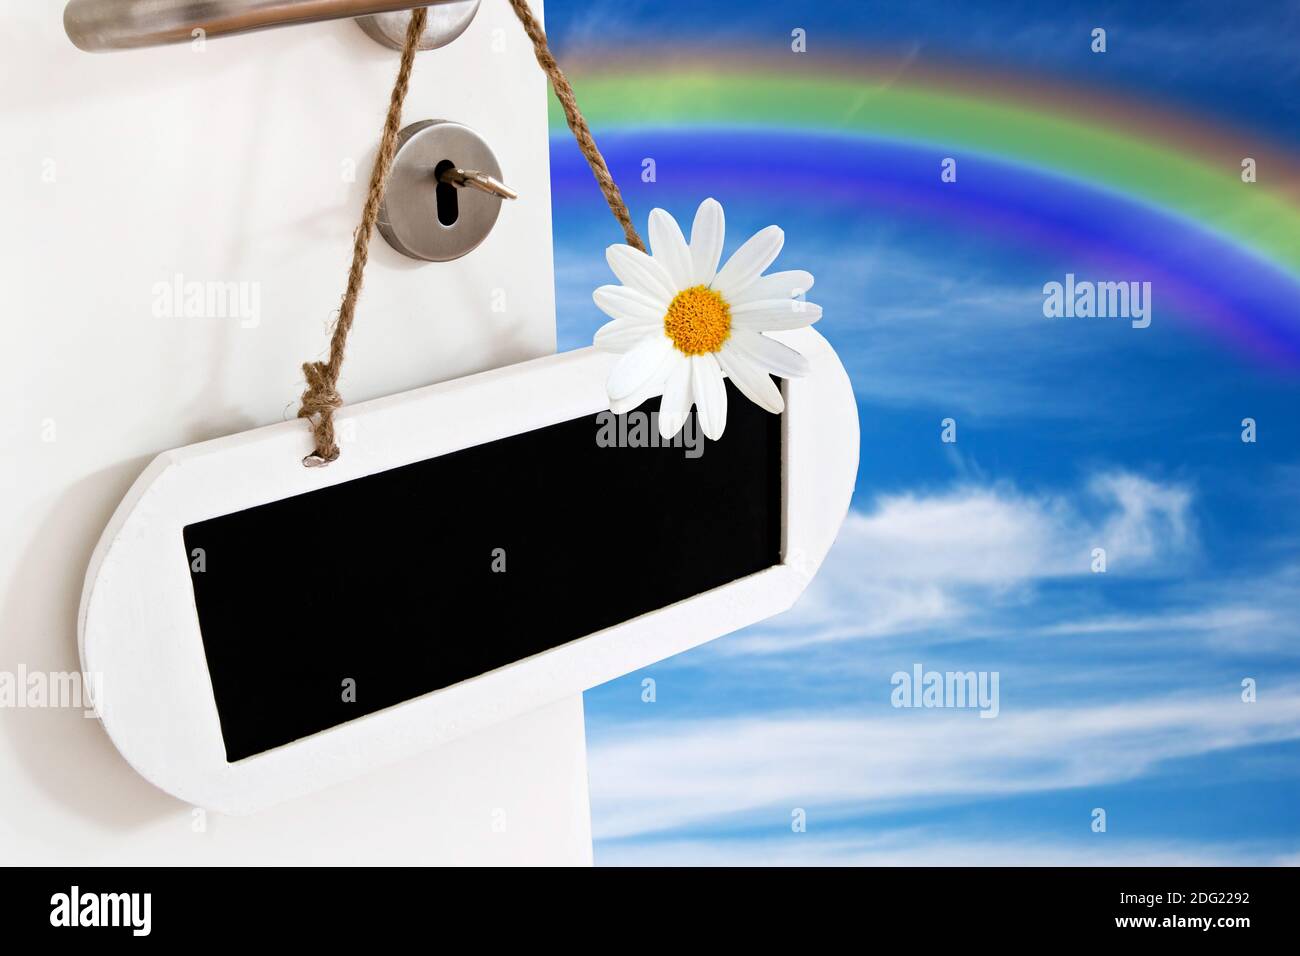 Offene Tür mit Kreidetafel , Himmel und Regenbogen Stock Photo